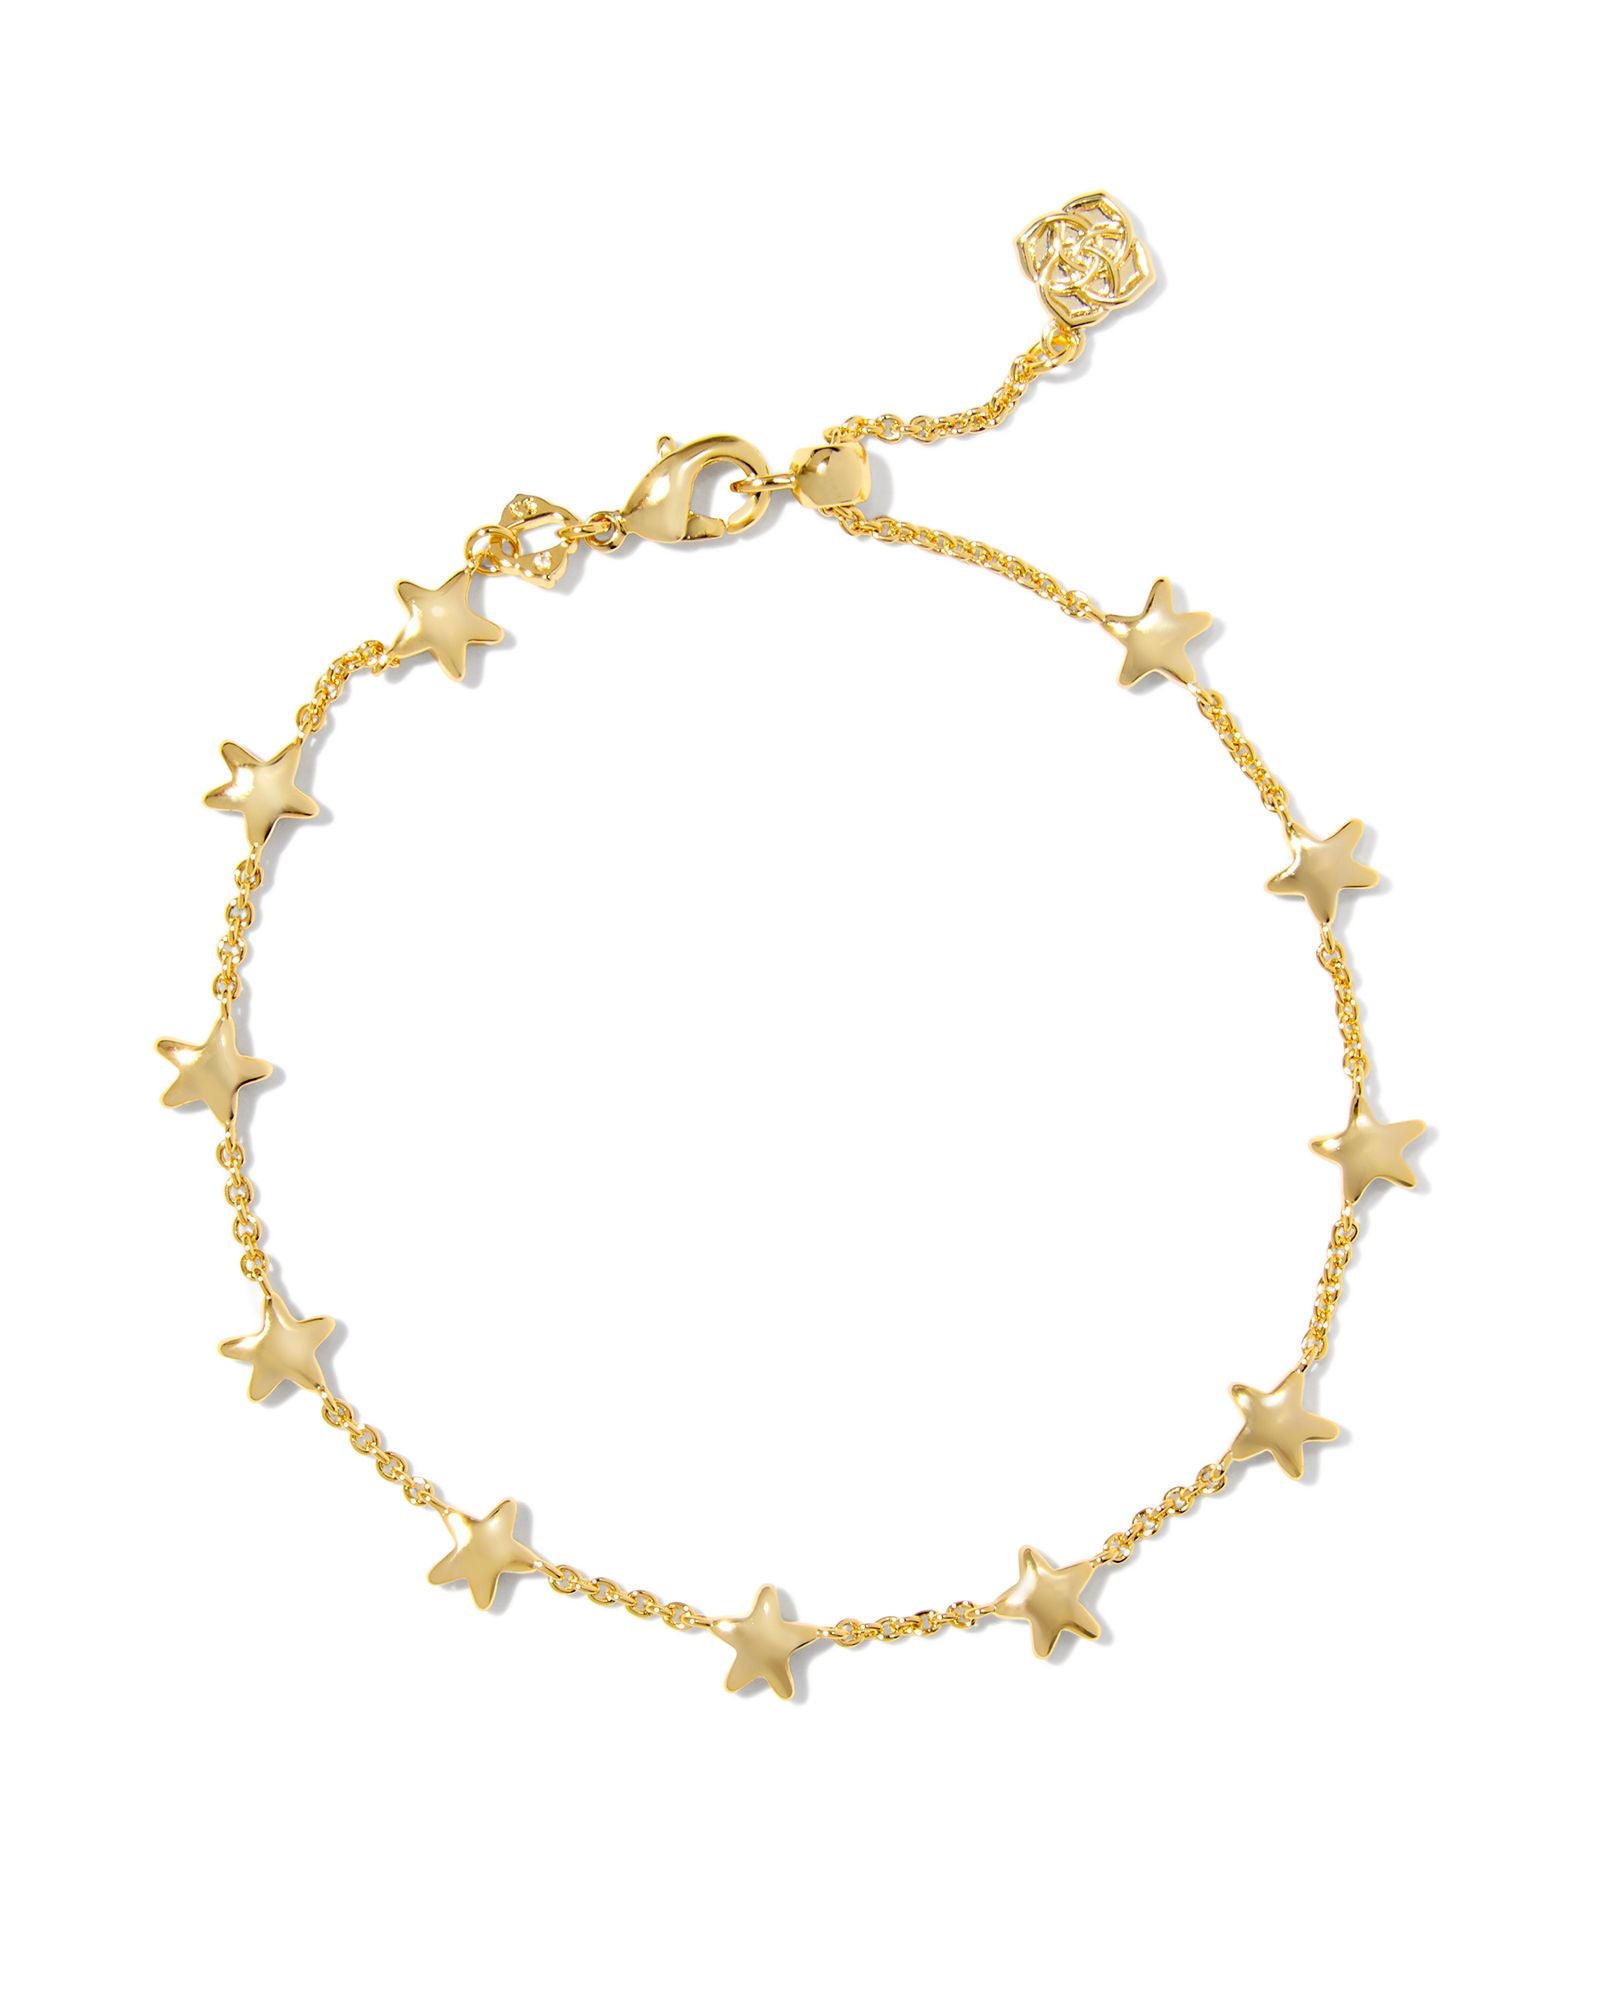 Sierra Star Delicate Chain Bracelet in Gold